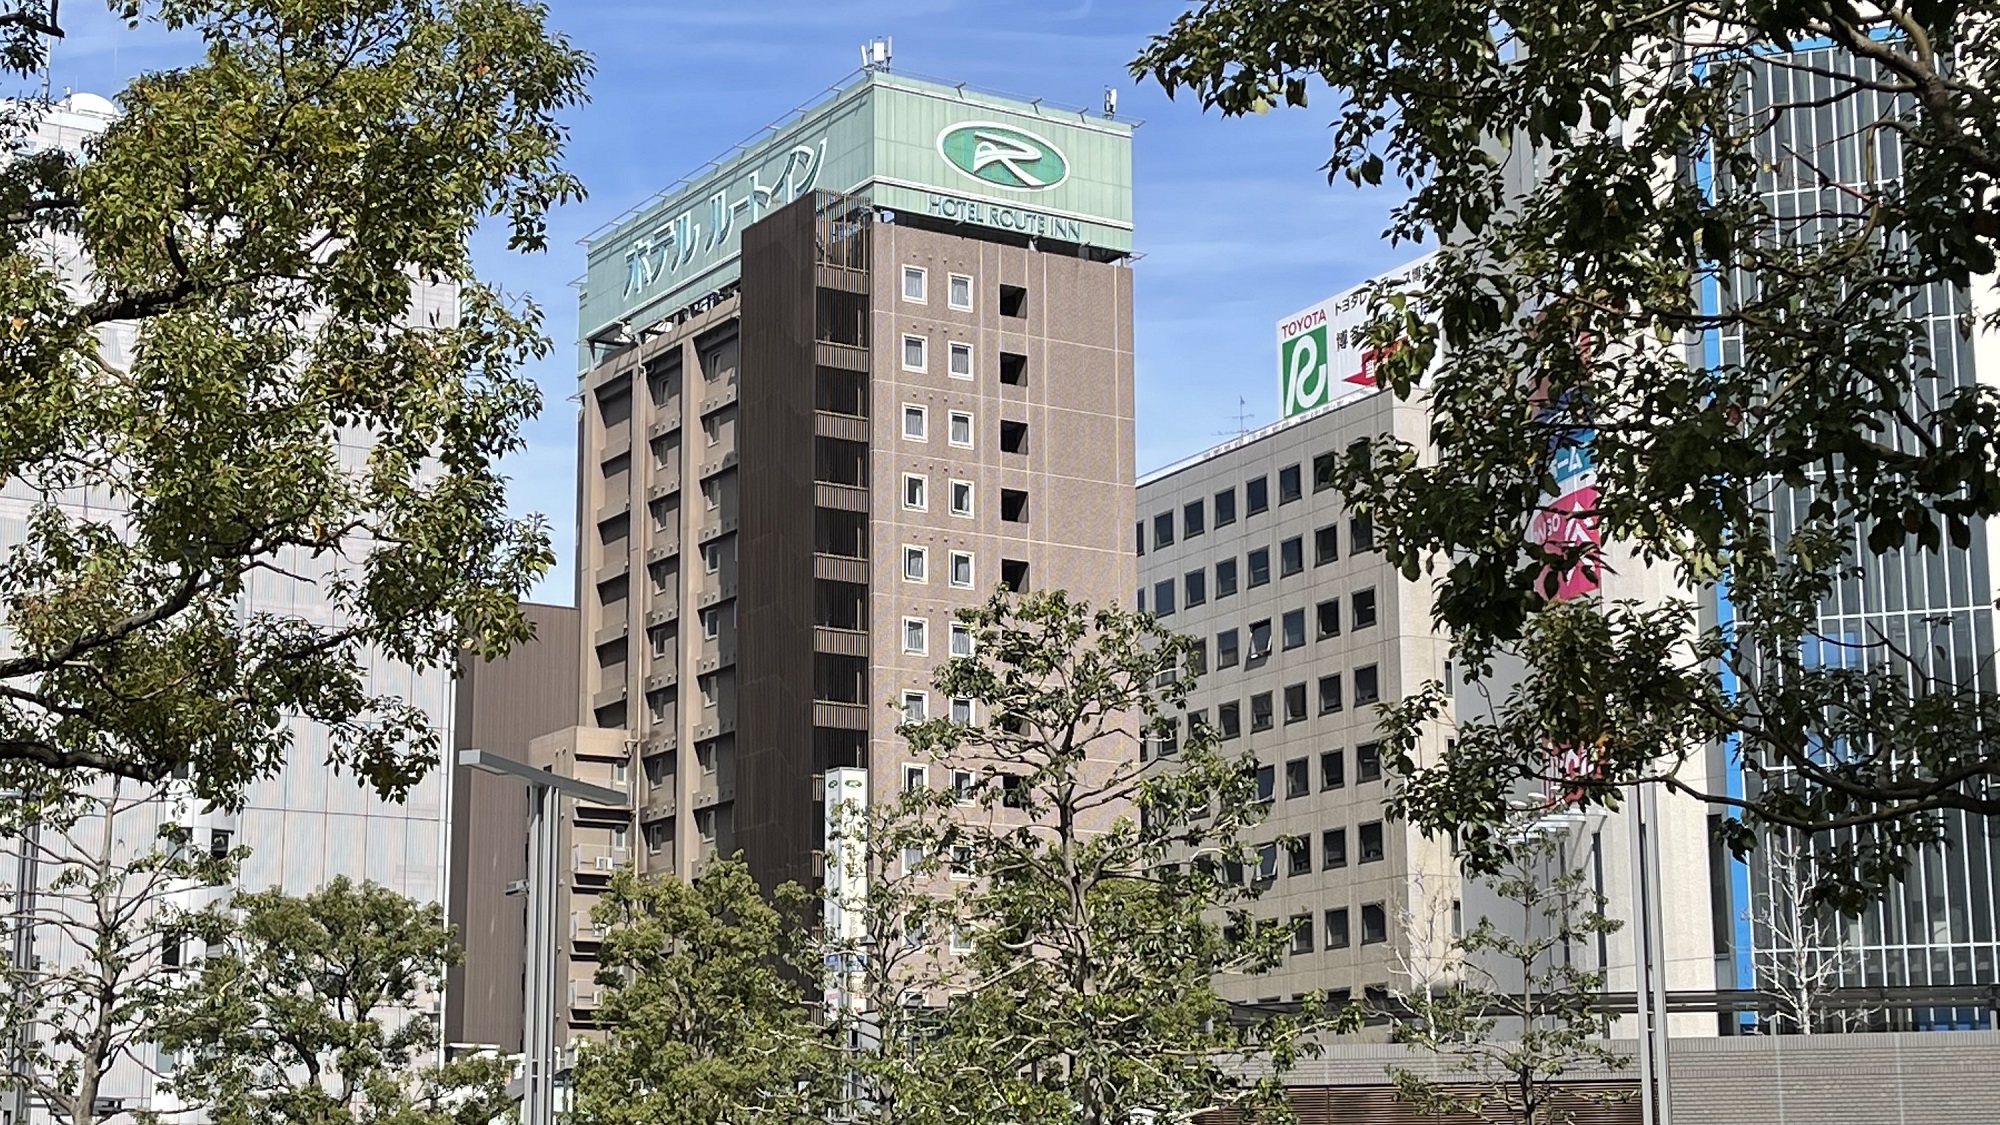 博多駅周辺で空気清浄機完備のビジネスユース向きホテルを探しています